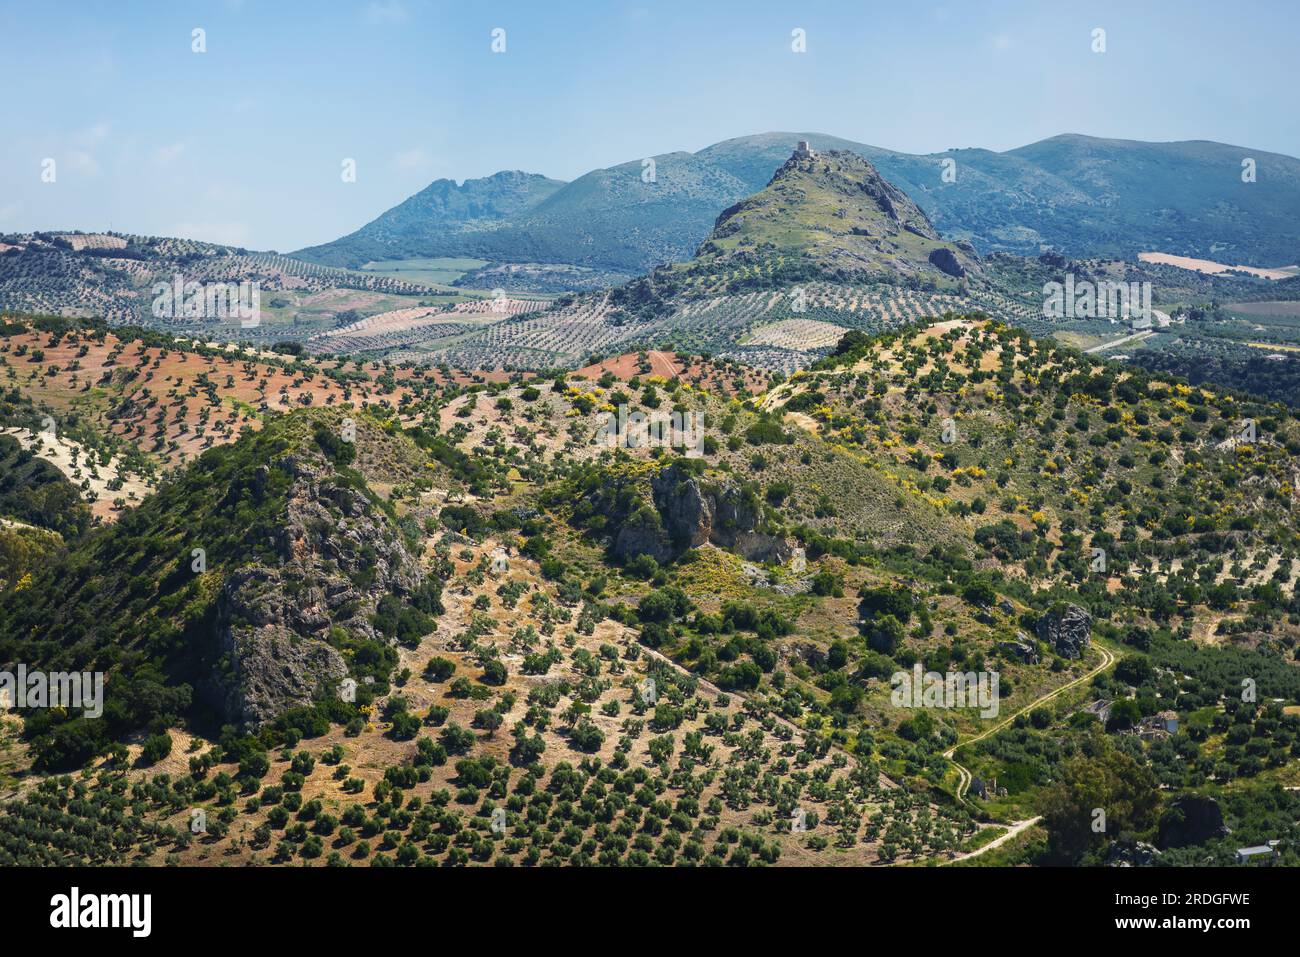 Montagnes vue depuis Olvera avec le château de fer de Pruna - Olvera, Andalousie, Espagne Banque D'Images